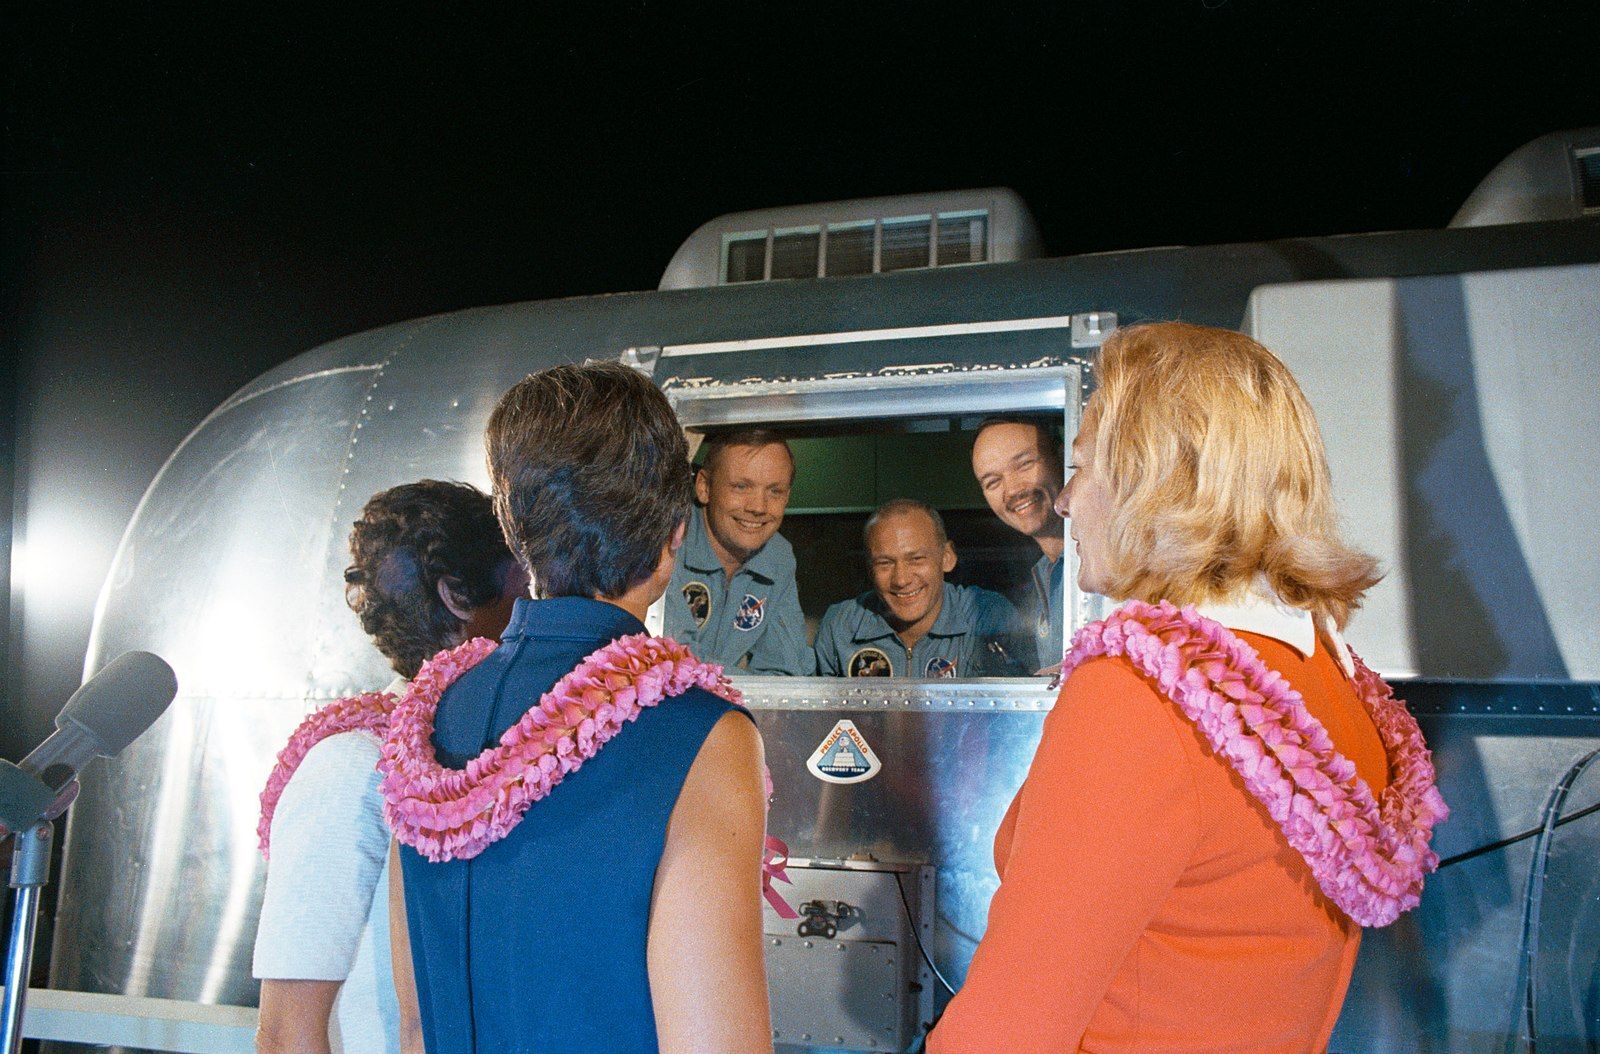 Les astronautes ont dû subir une <a href="https://www.lemonde.fr/archives/article/1969/08/12/la-quarantaine-des-astronautes-d-apollo-11-a-pris-fin_2409272_1819218.html" rel="noreferrer noopener">période de quarantaine de 21 jours</a> dès leur retour sur Terre, afin de s’assurer qu’ils n’avaient pas ramené par inadvertance des bactéries de la Lune et pour que les médecins puissent surveiller leur état de santé. Armstrong a notamment fêté son anniversaire en isolement, et les épouses des astronautes Pat Collins, Jan Armstrong et Joan Aldrin sont venues visiter les membres de l’équipage. <a href="https://www.lemonde.fr/archives/article/1969/07/23/plusieurs-chefs-d-etat-ont-adresse-des-messages-de-felicitations-a-m-nixon_2413391_1819218.html" rel="noreferrer noopener">Le président Richard Nixon</a> est également arrivé à l’installation de quarantaine mobile d’Hawaï pour les féliciter personnellement de leur accomplissement monumental.